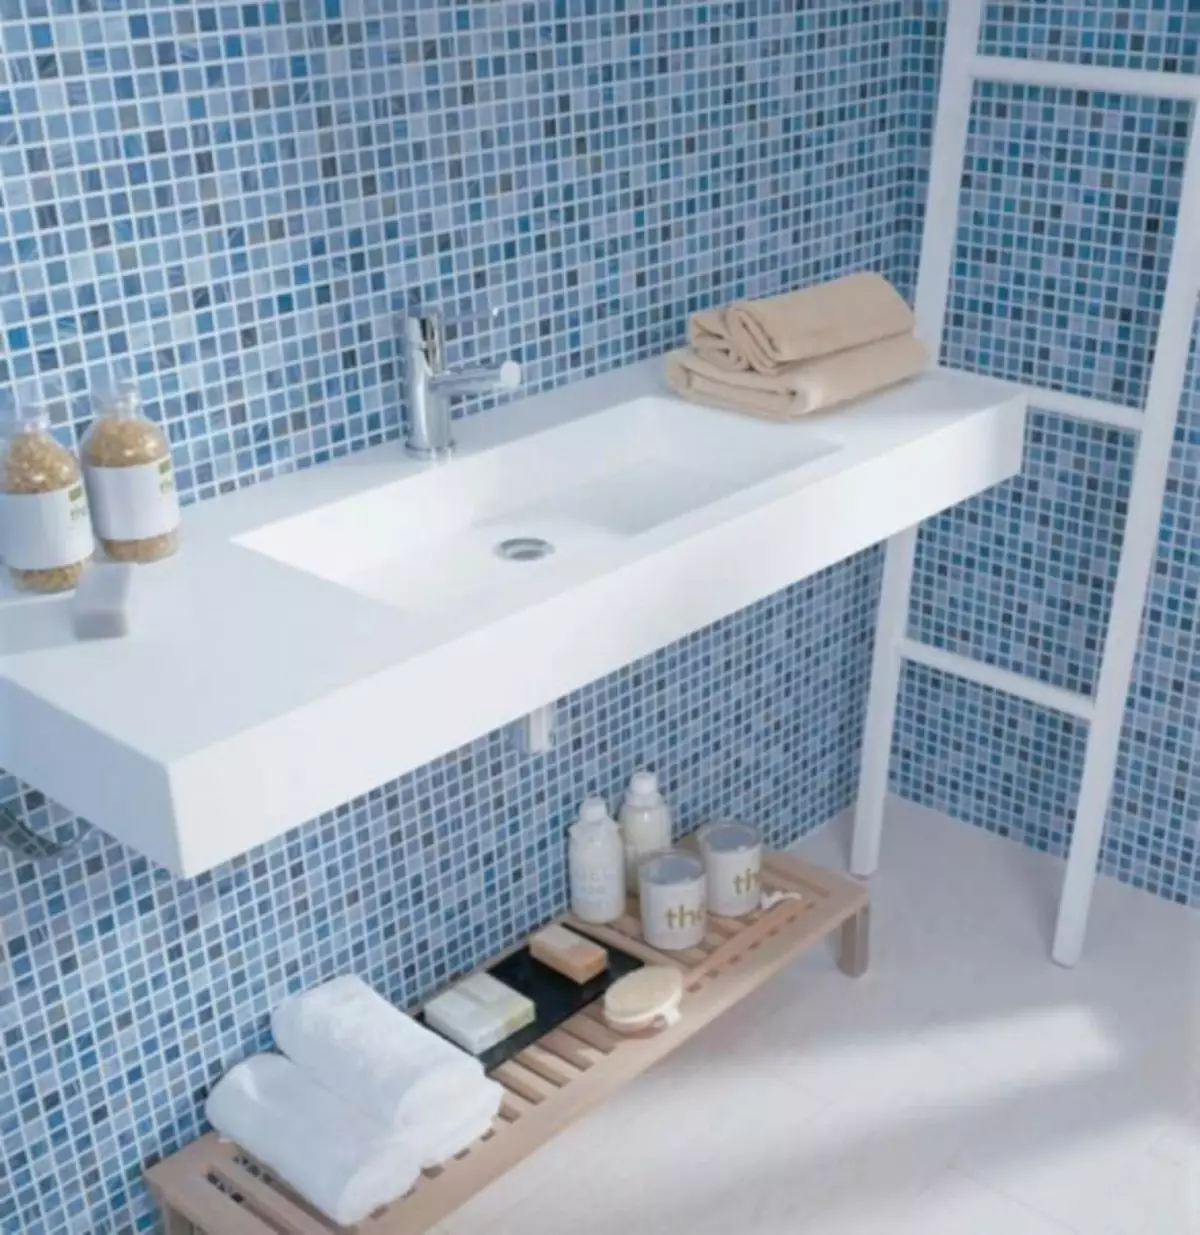 Mosaic de rajoles per al bany: tipus de mosaic i tecnologia de muntatge